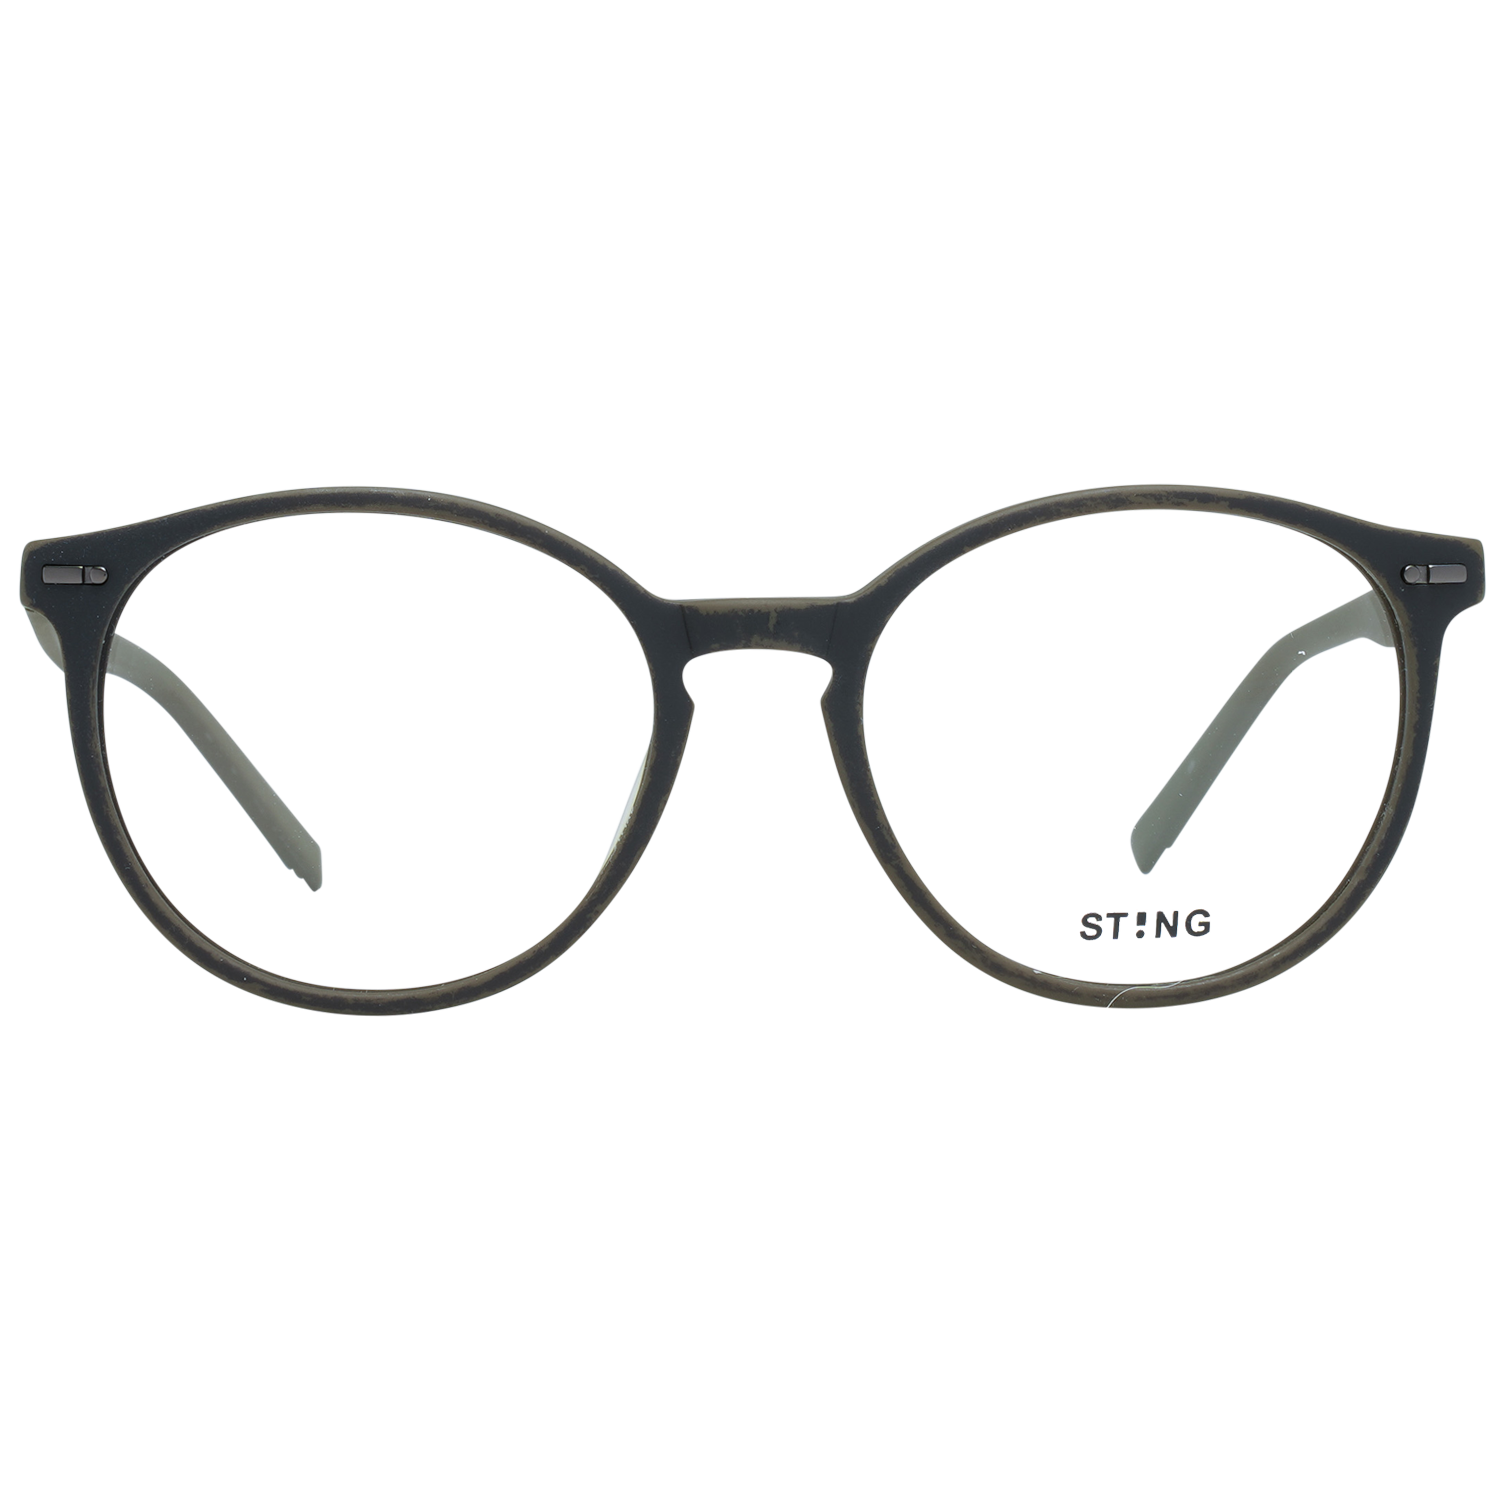 Sting Frames Sting Optical Frame VST039 90YM 49 Eyeglasses Eyewear UK USA Australia 